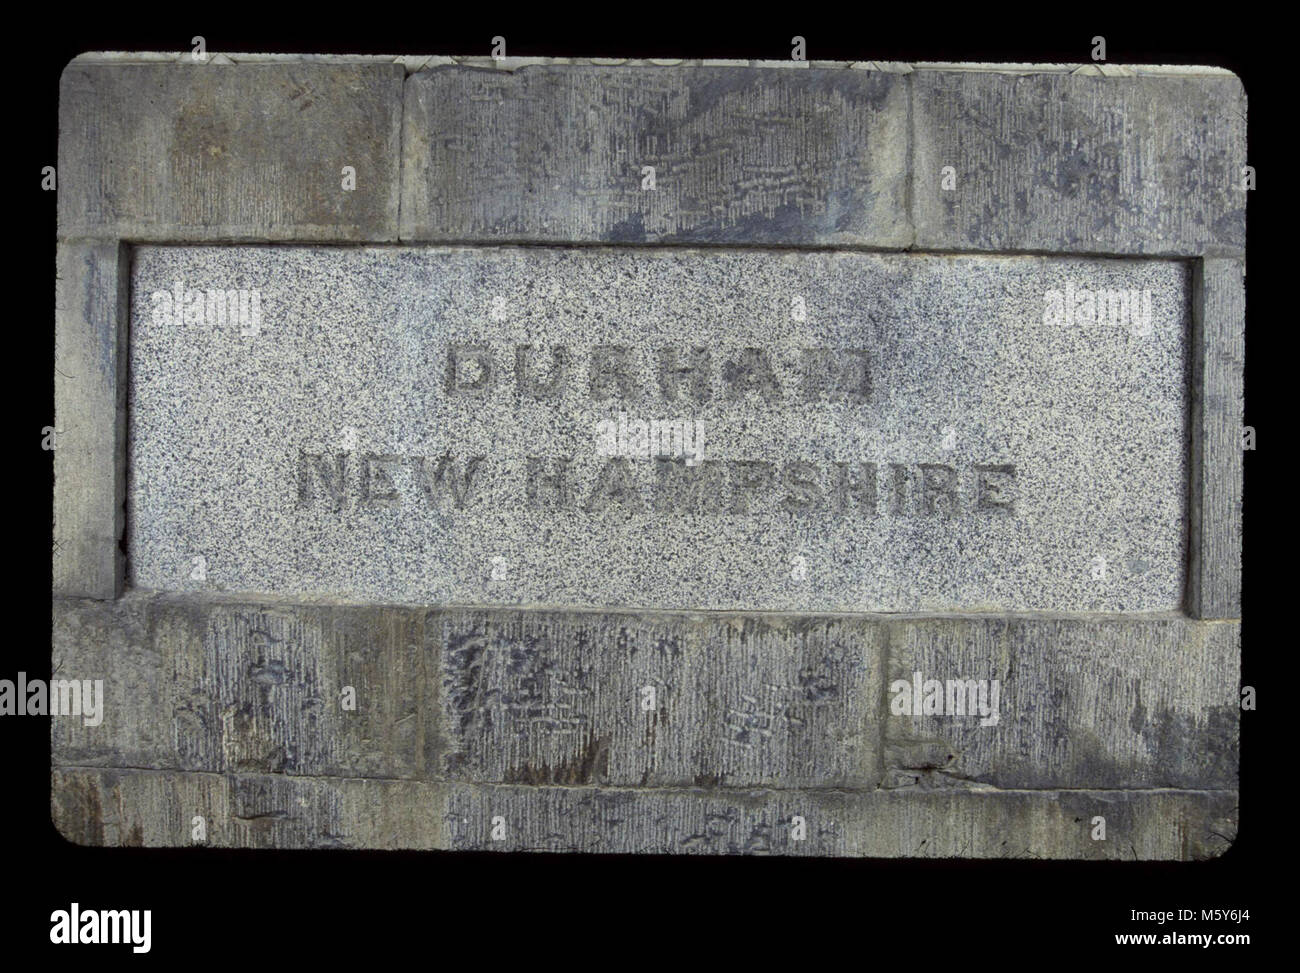 Durham, New Hampshire Niveau : 130-ft. Donateur : Durham, New Hampshire Dates : 1850s/1850s matériel original : granit Dimensions : 2' x 6' Sculpteur/Carver : pas connu inscription initiale : New Hampshire Durham Banque D'Images